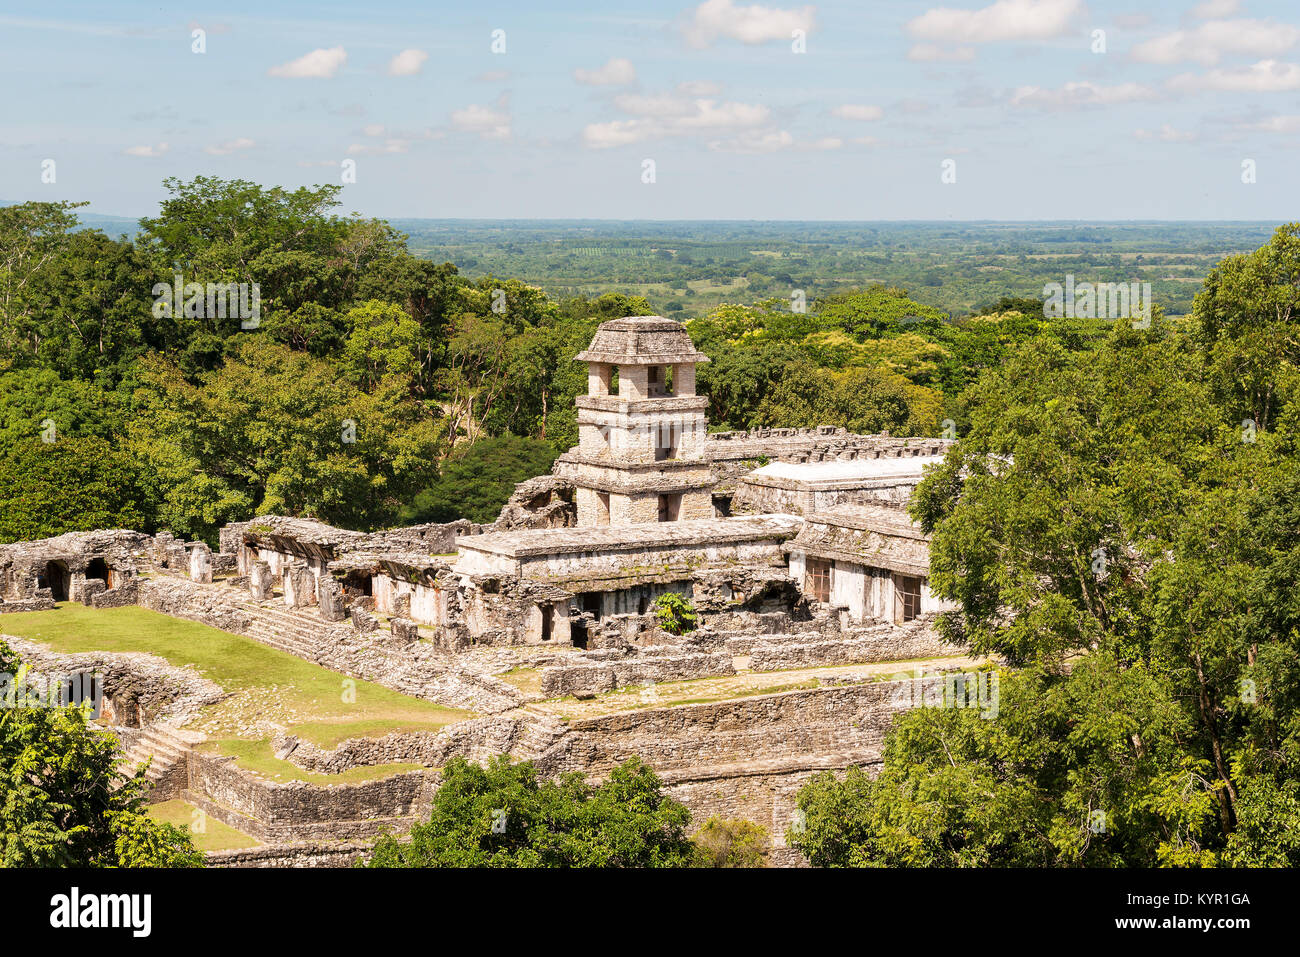 PALENQUE, Messico - 29 novembre: elevato angolo di visione dell'antico Palazzo Maya presso il sito del patrimonio mondiale il 29 novembre 2016 in Palenque. Palenque è stata declar Foto Stock